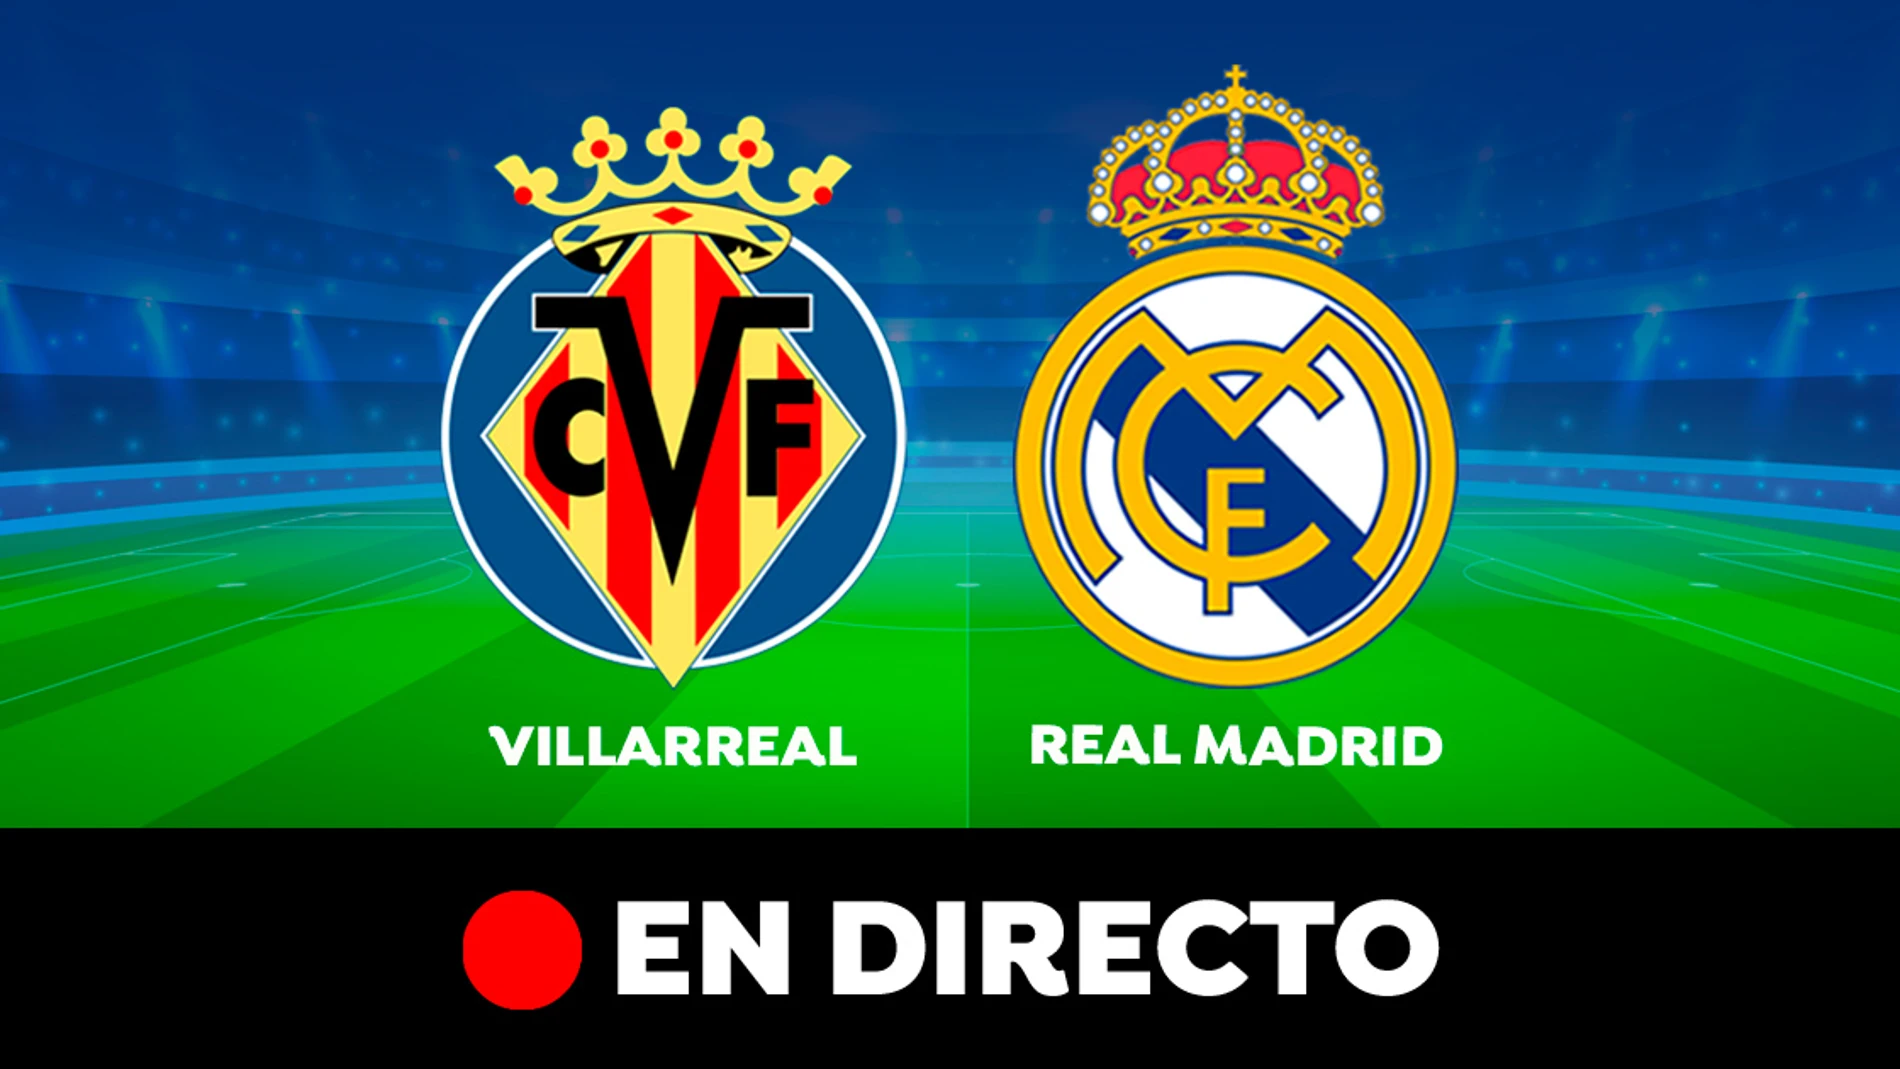 Villarreal vs Real Madrid EN DIRECTO: Resultado, goles de hoy de la Liga hoy